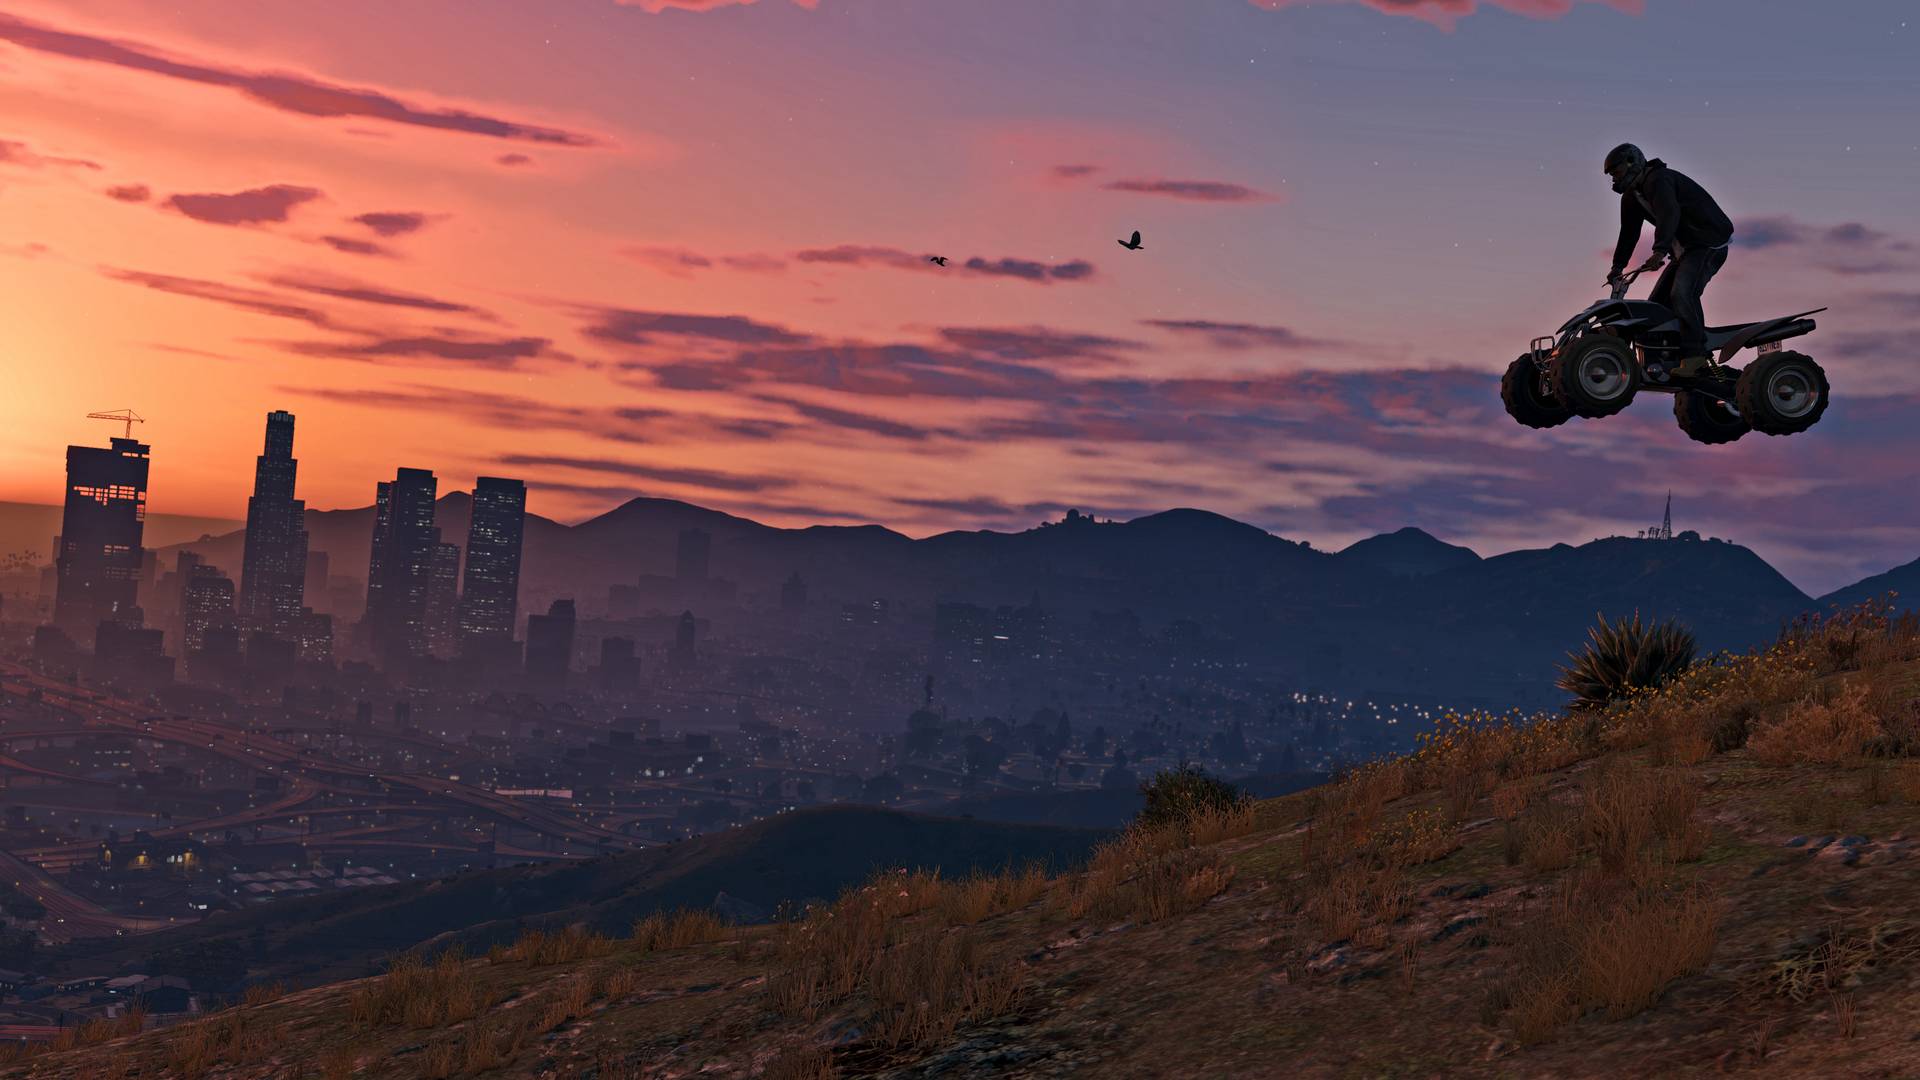 《侠盗猎车5》pc版4k超高清截图放出 涵盖游戏多处风景